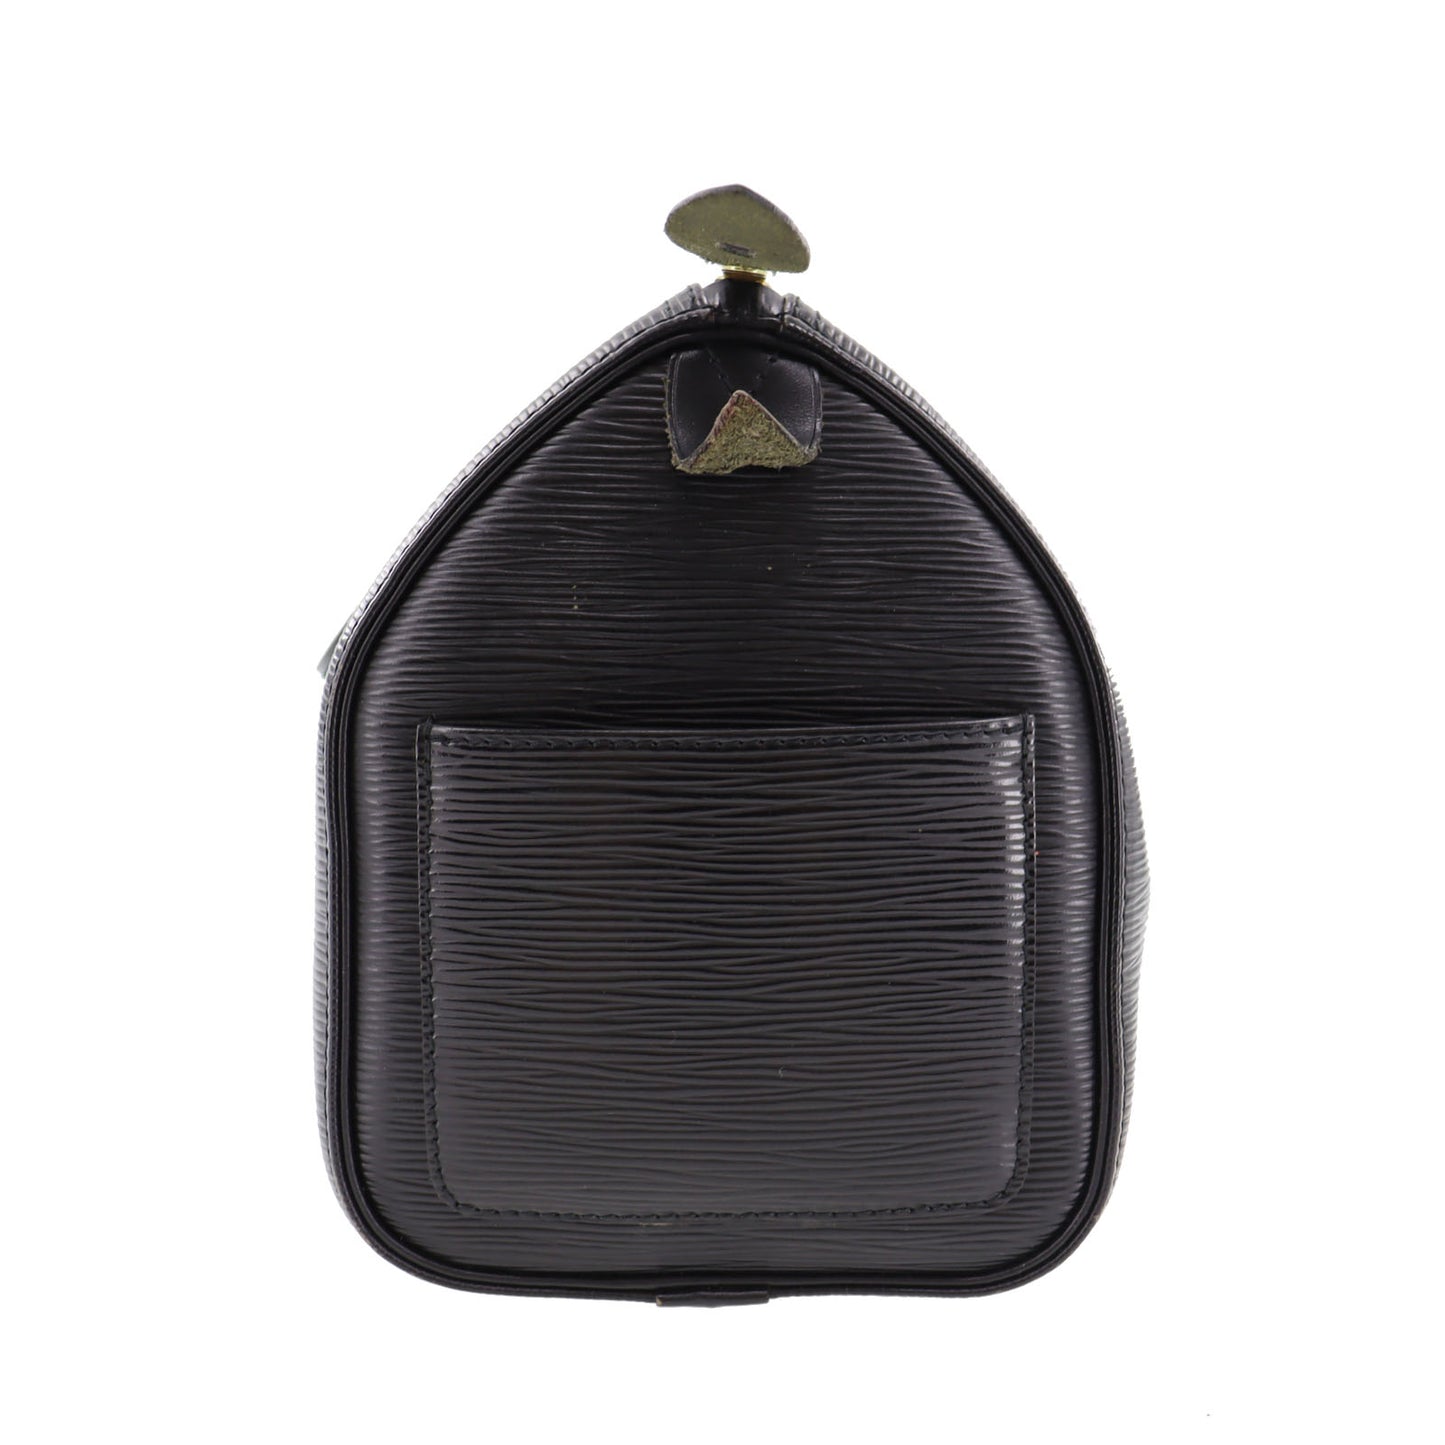 Louis Vuitton M59032 Speedy 25 Epi Handbag Mini Boston Black Noir